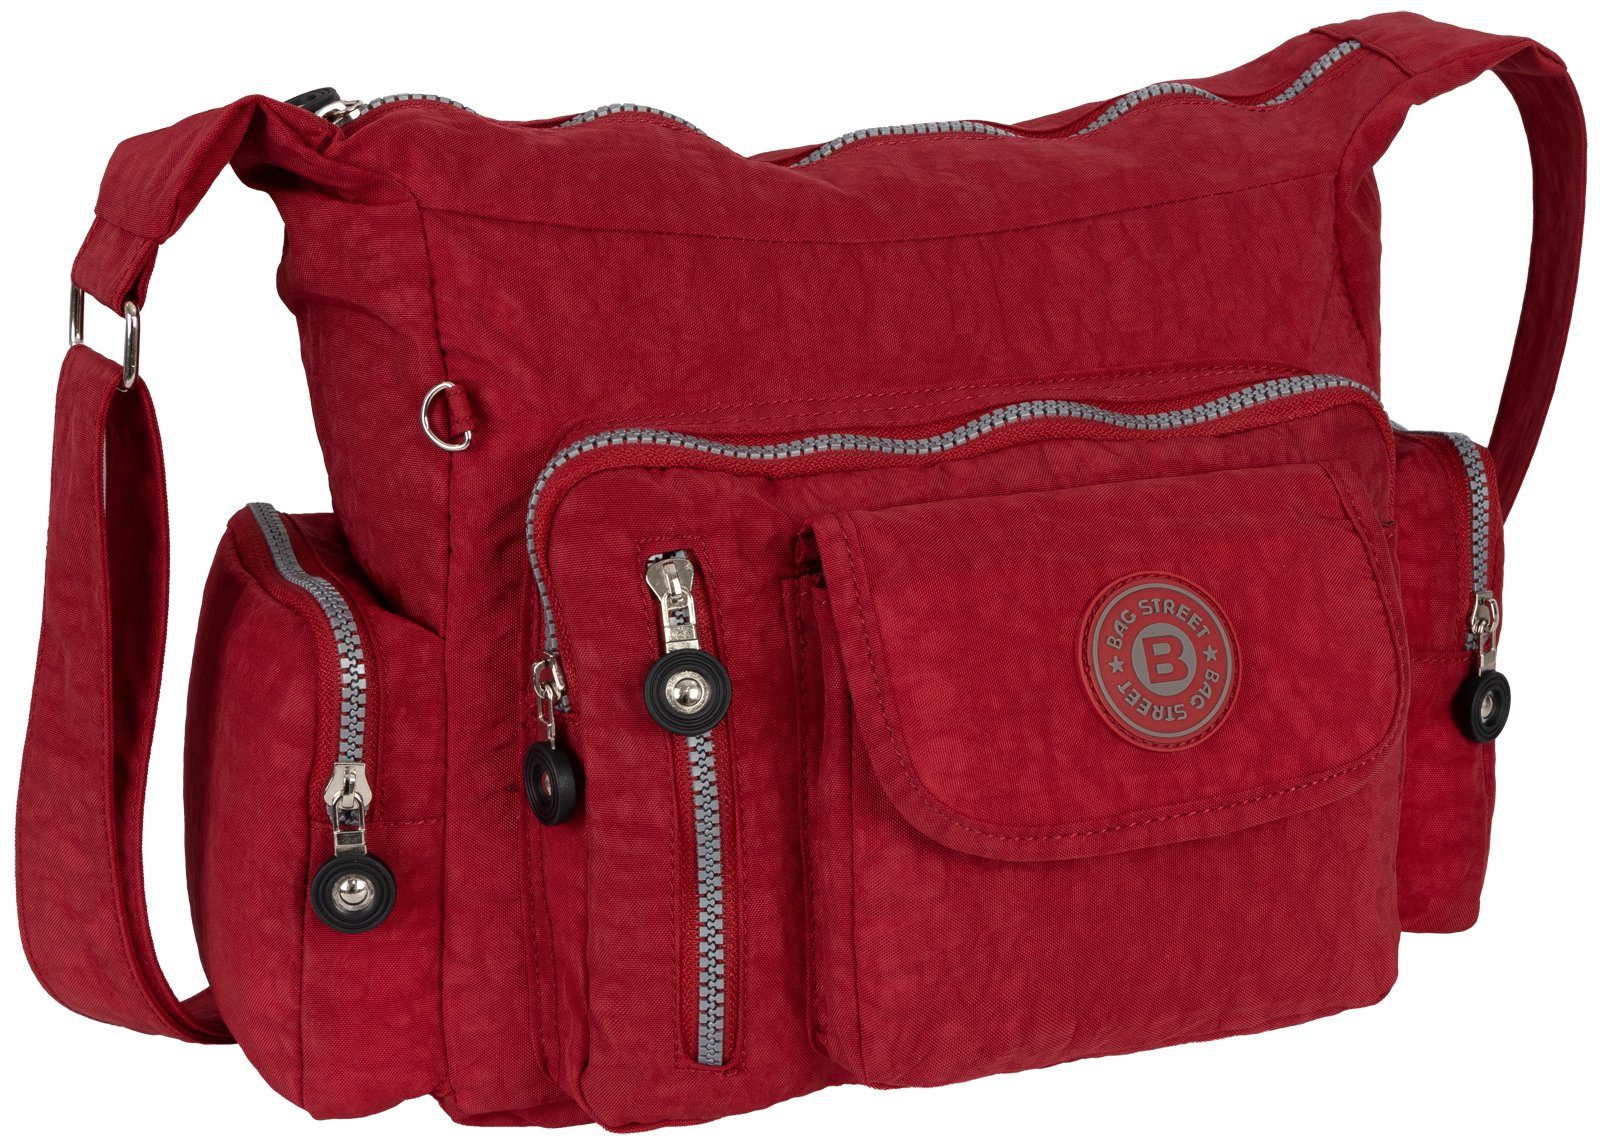 BAG STREET Umhängetasche Damentasche Umhängetasche Handtasche Schultertasche Taupe, als Schultertasche, Umhängetasche tragbar Rot